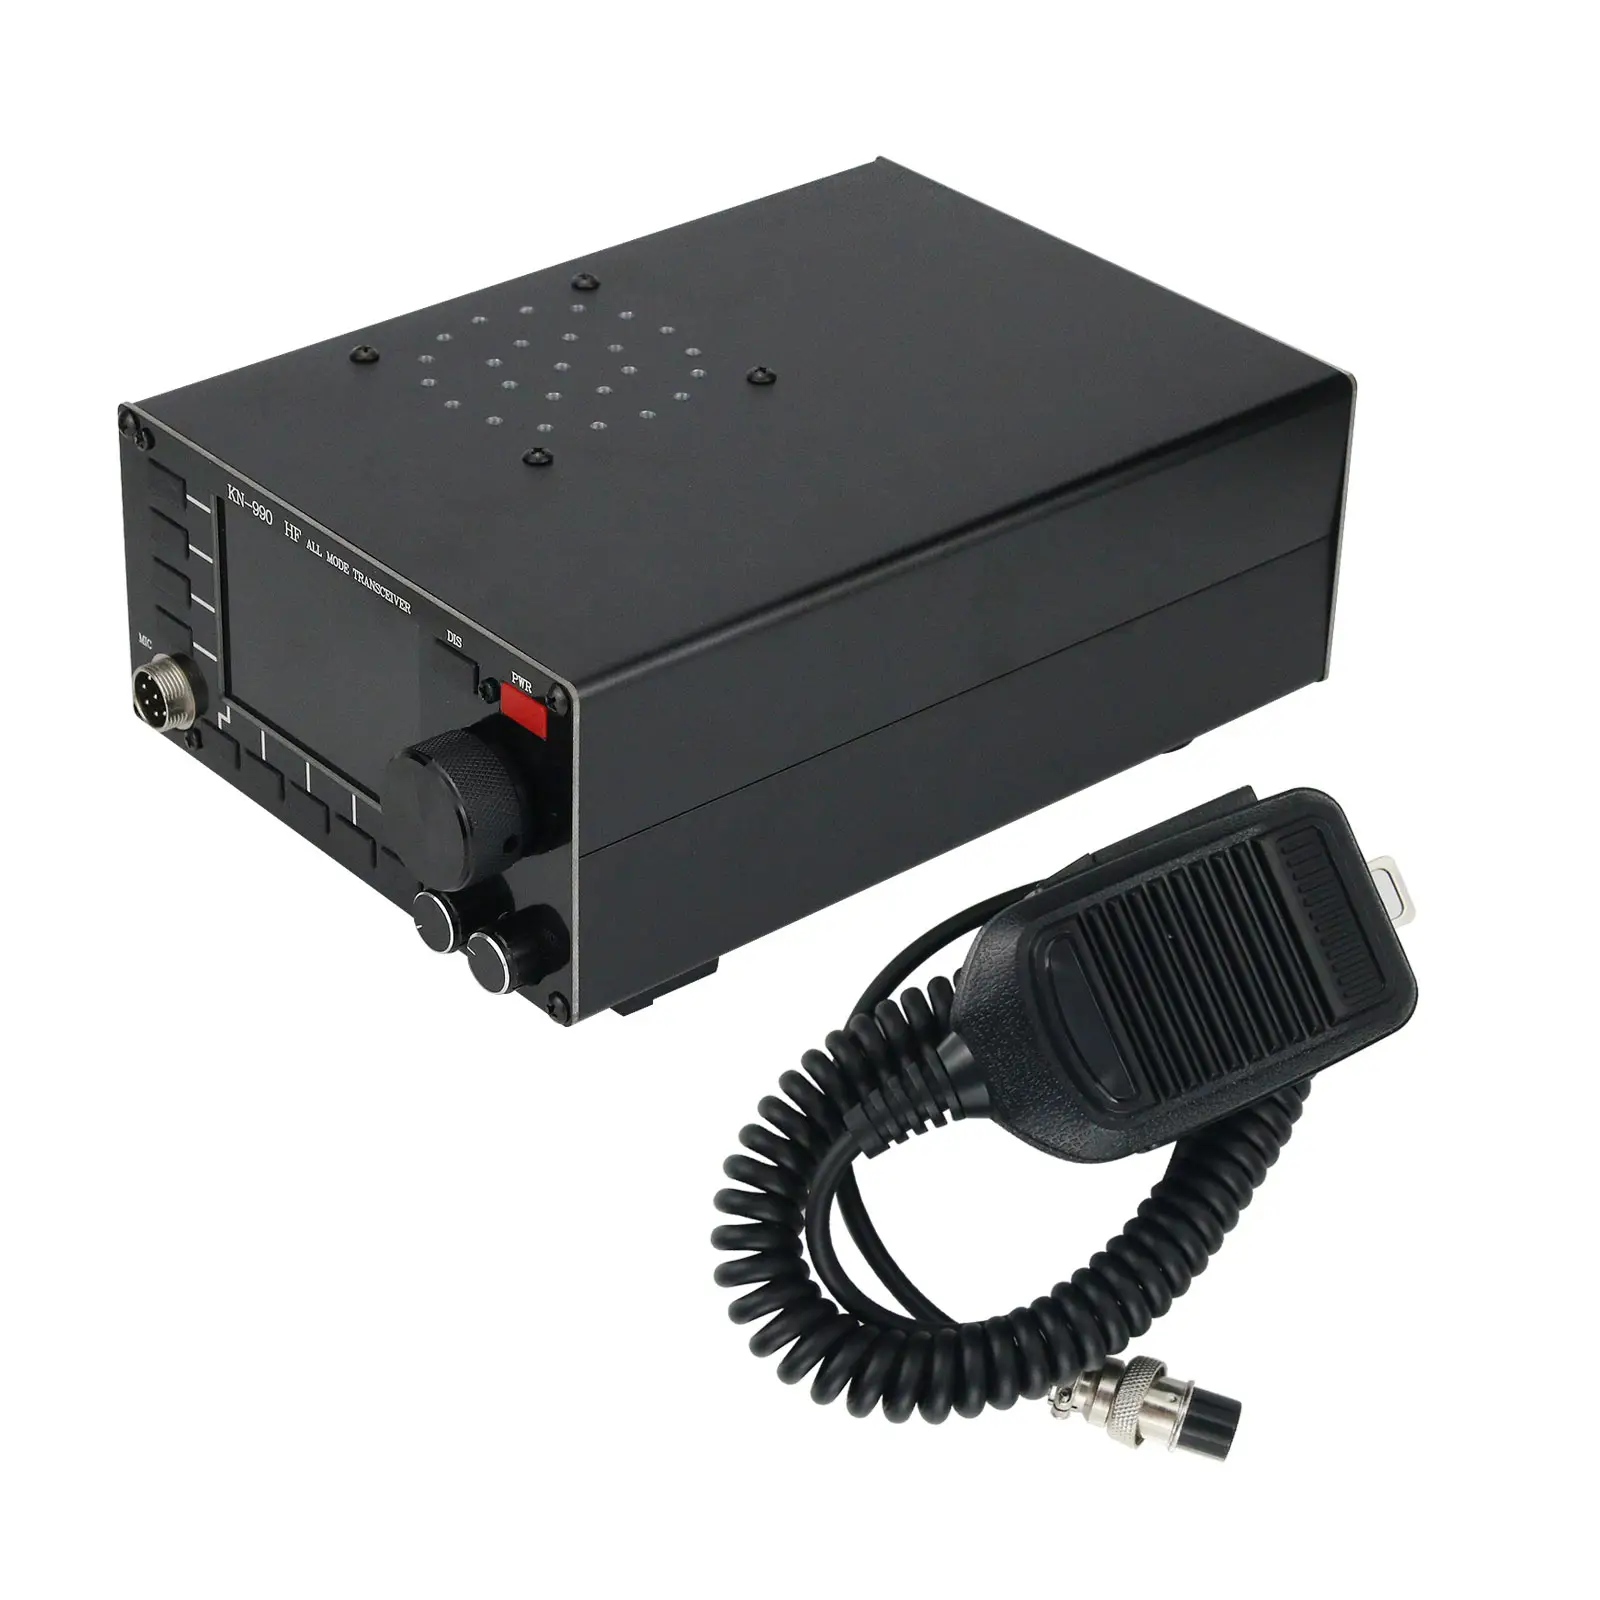 KN990 HF tüm mod alıcı verici SSB/CW/AM/FM/dijital çalışma modu kısa dalga alıcı